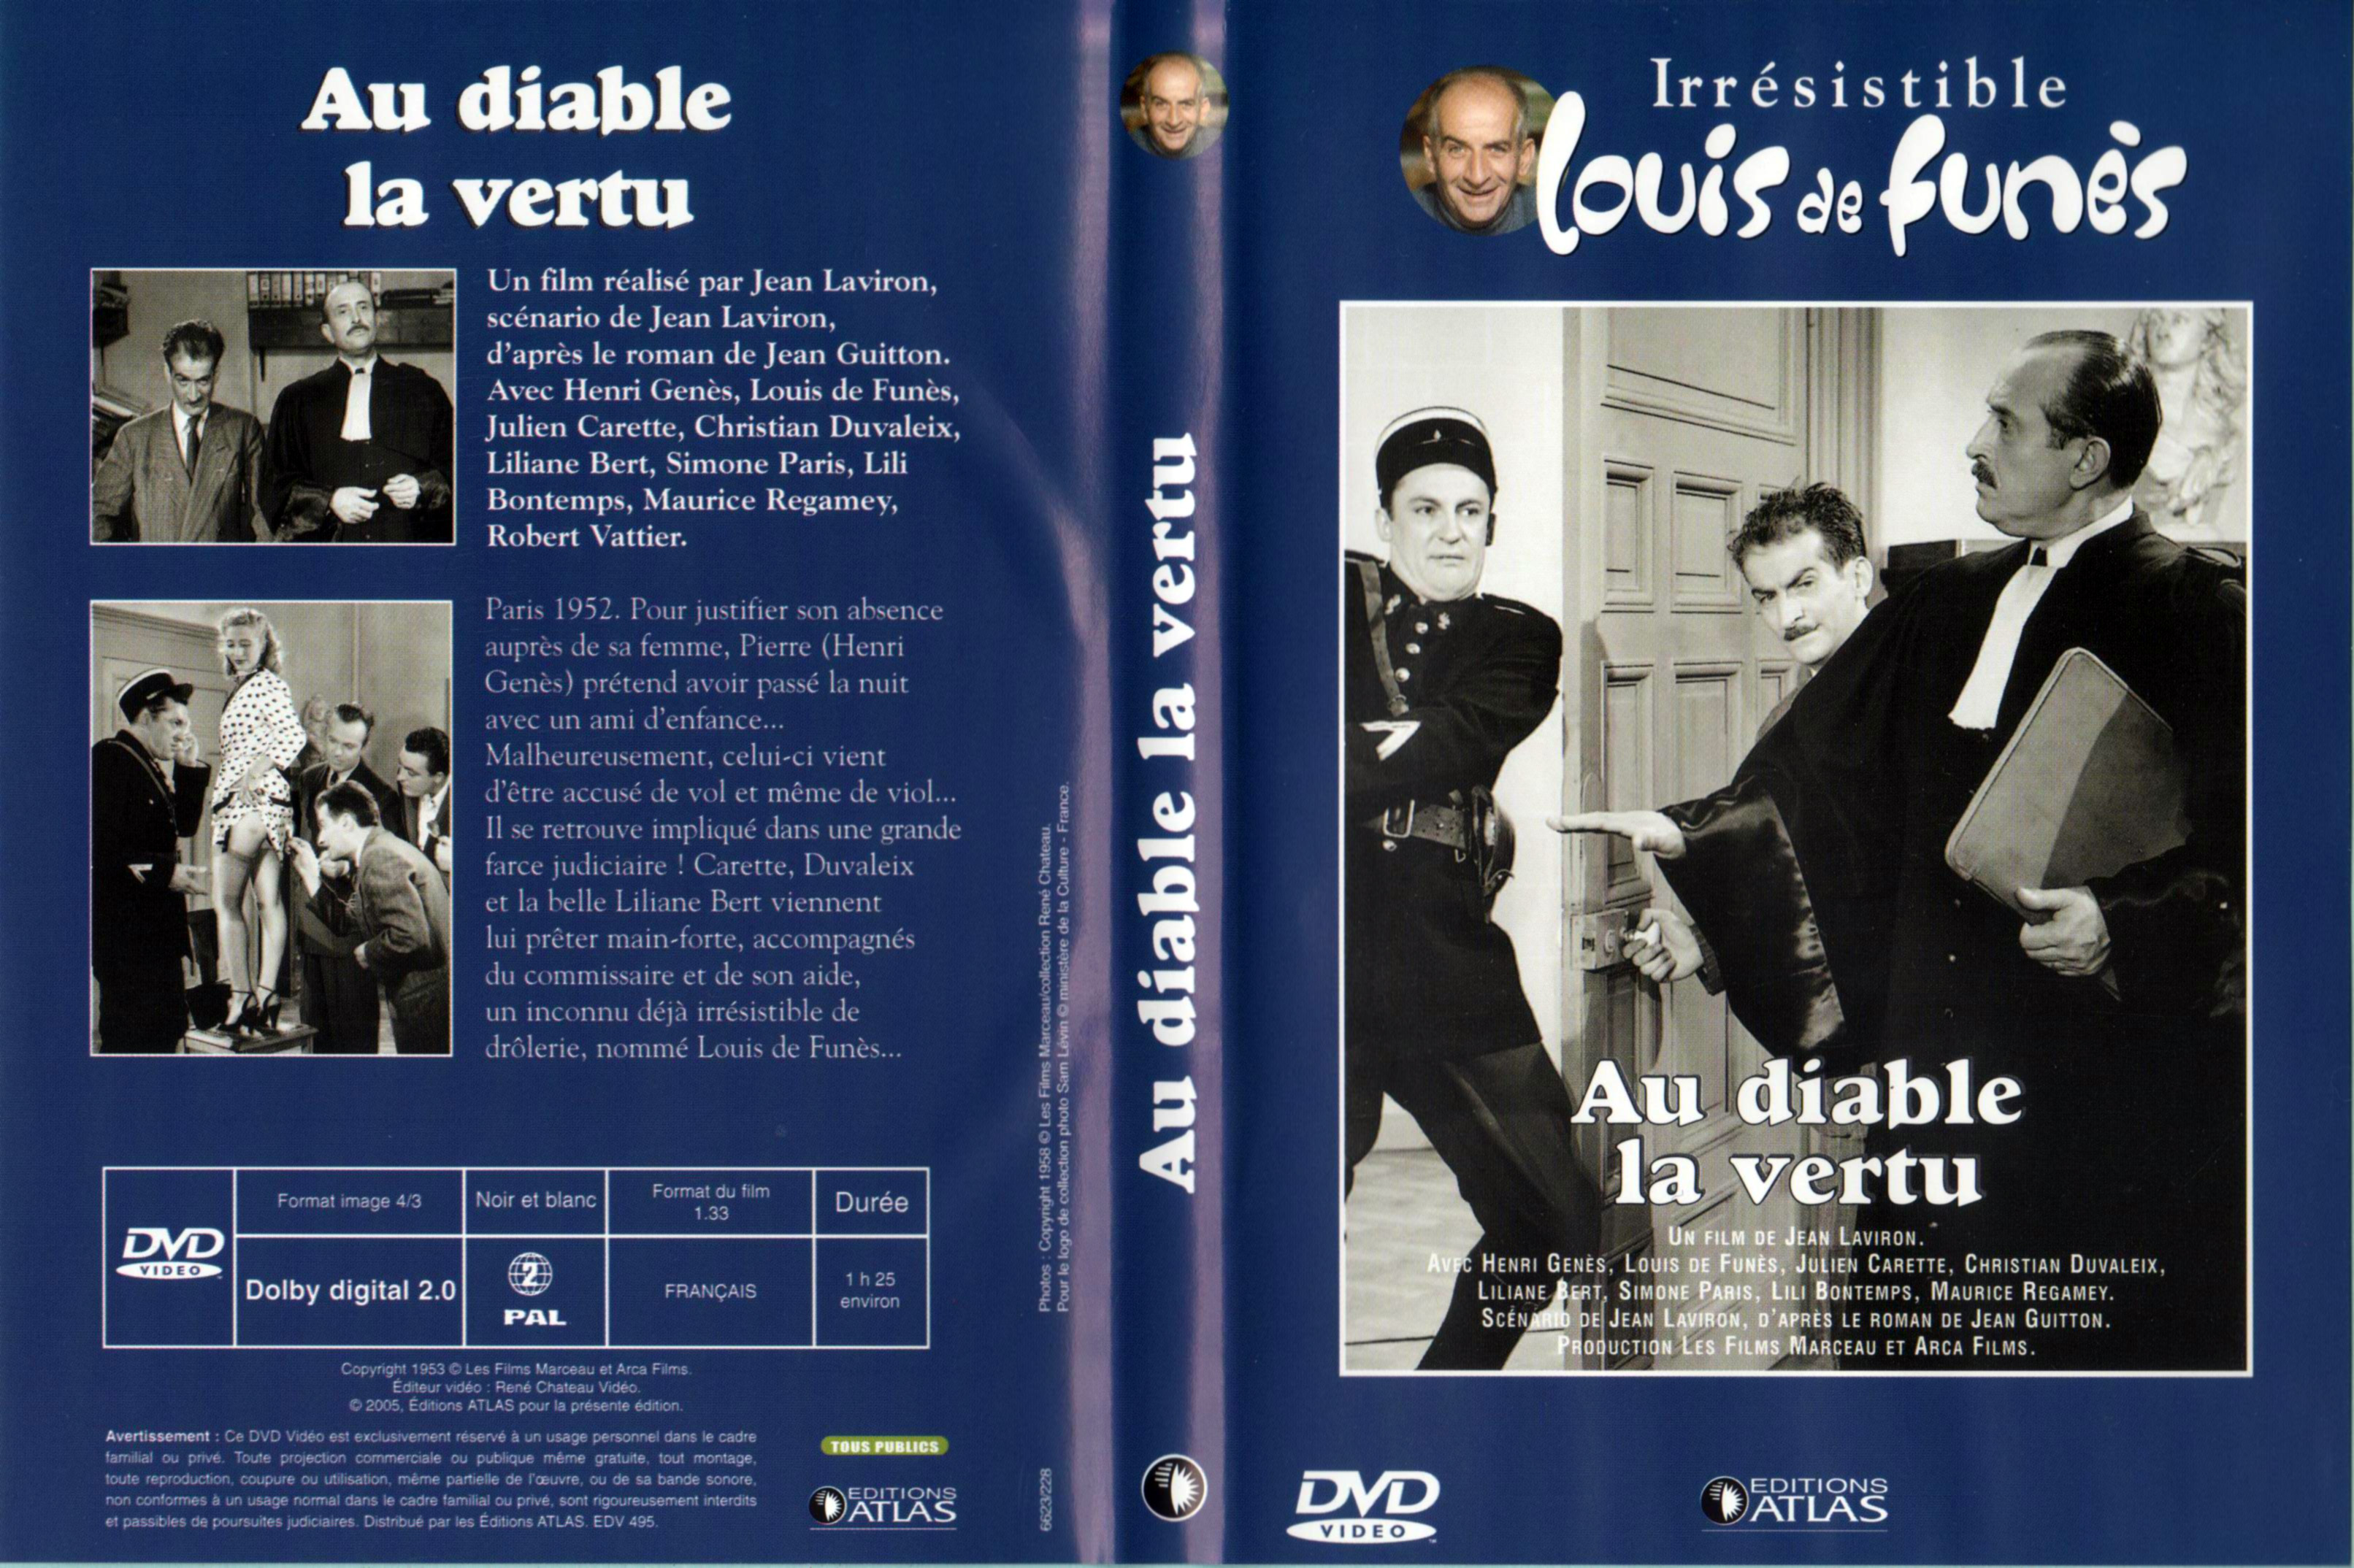 Jaquette DVD Au diable la vertu v2